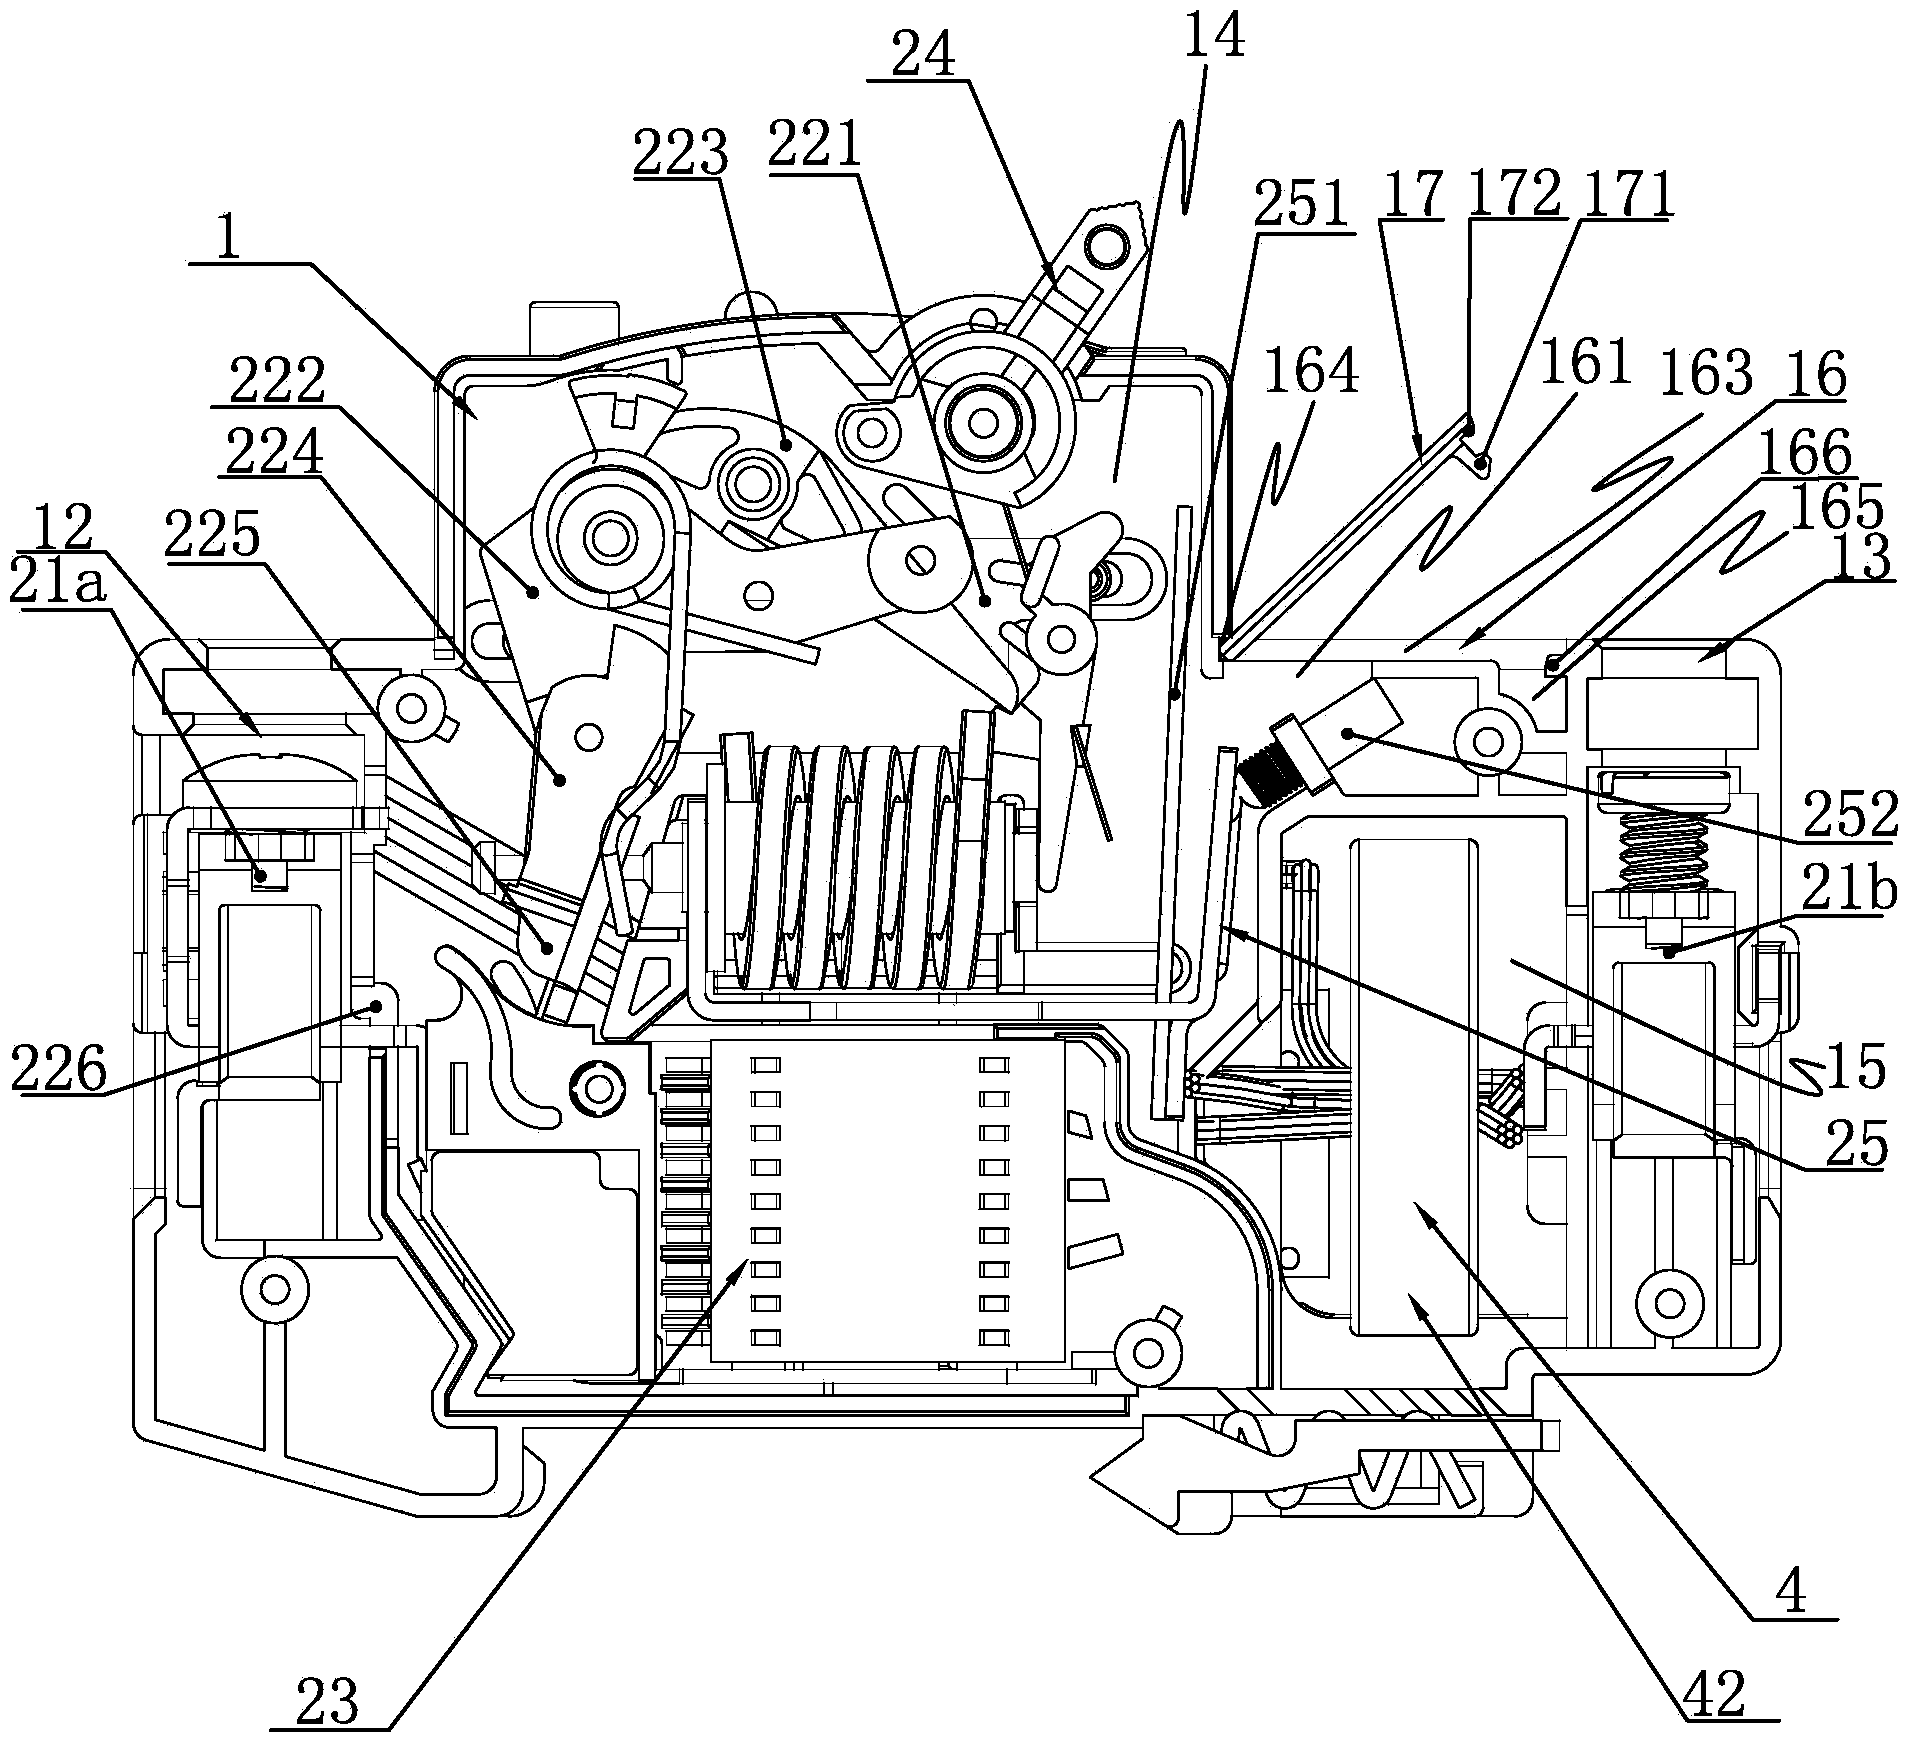 Integral residual current circuit breaker